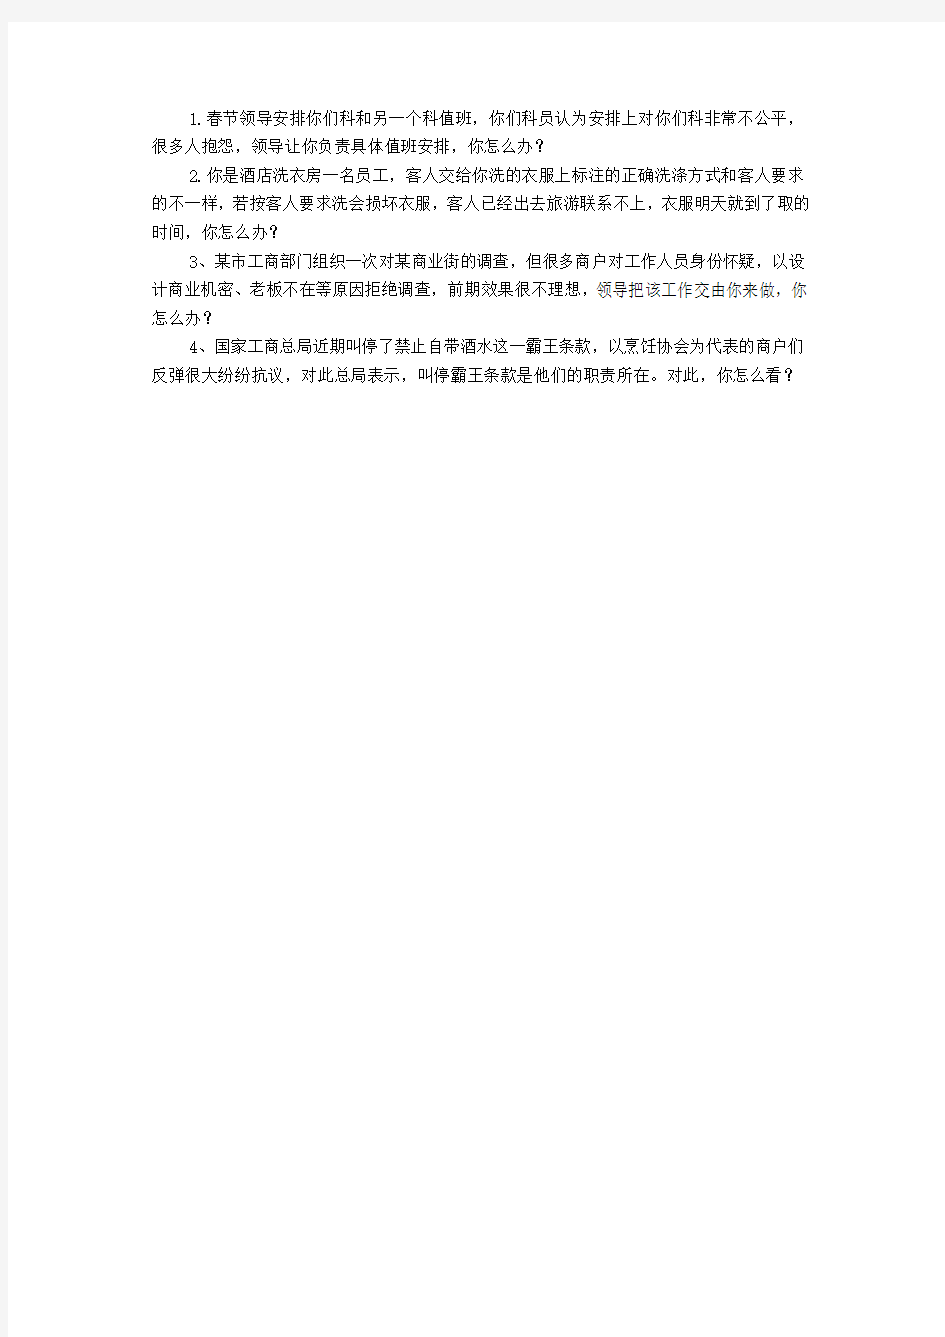 2014年2月21日国家公务员考试深圳海关面试真题